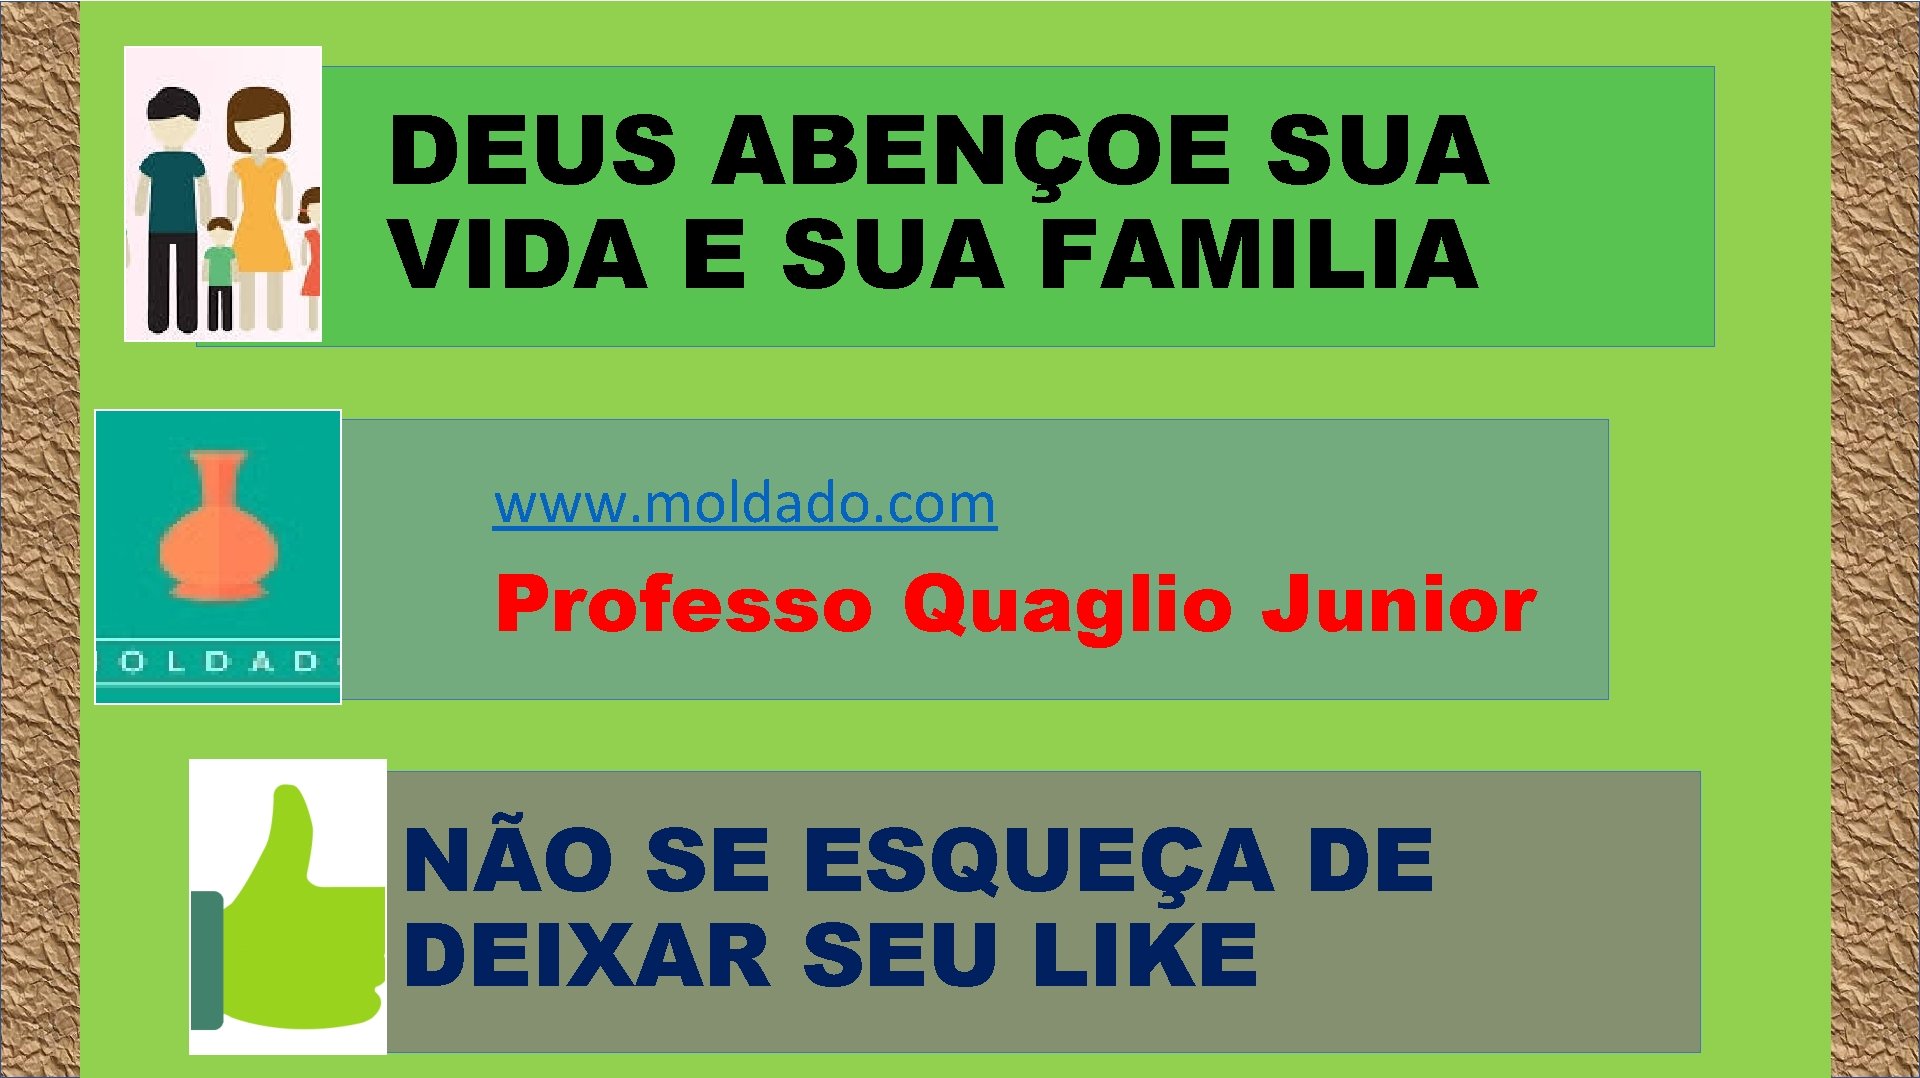 DEUS ABENÇOE SUA VIDA E SUA FAMILIA www. moldado. com Professo Quaglio Junior NÃO